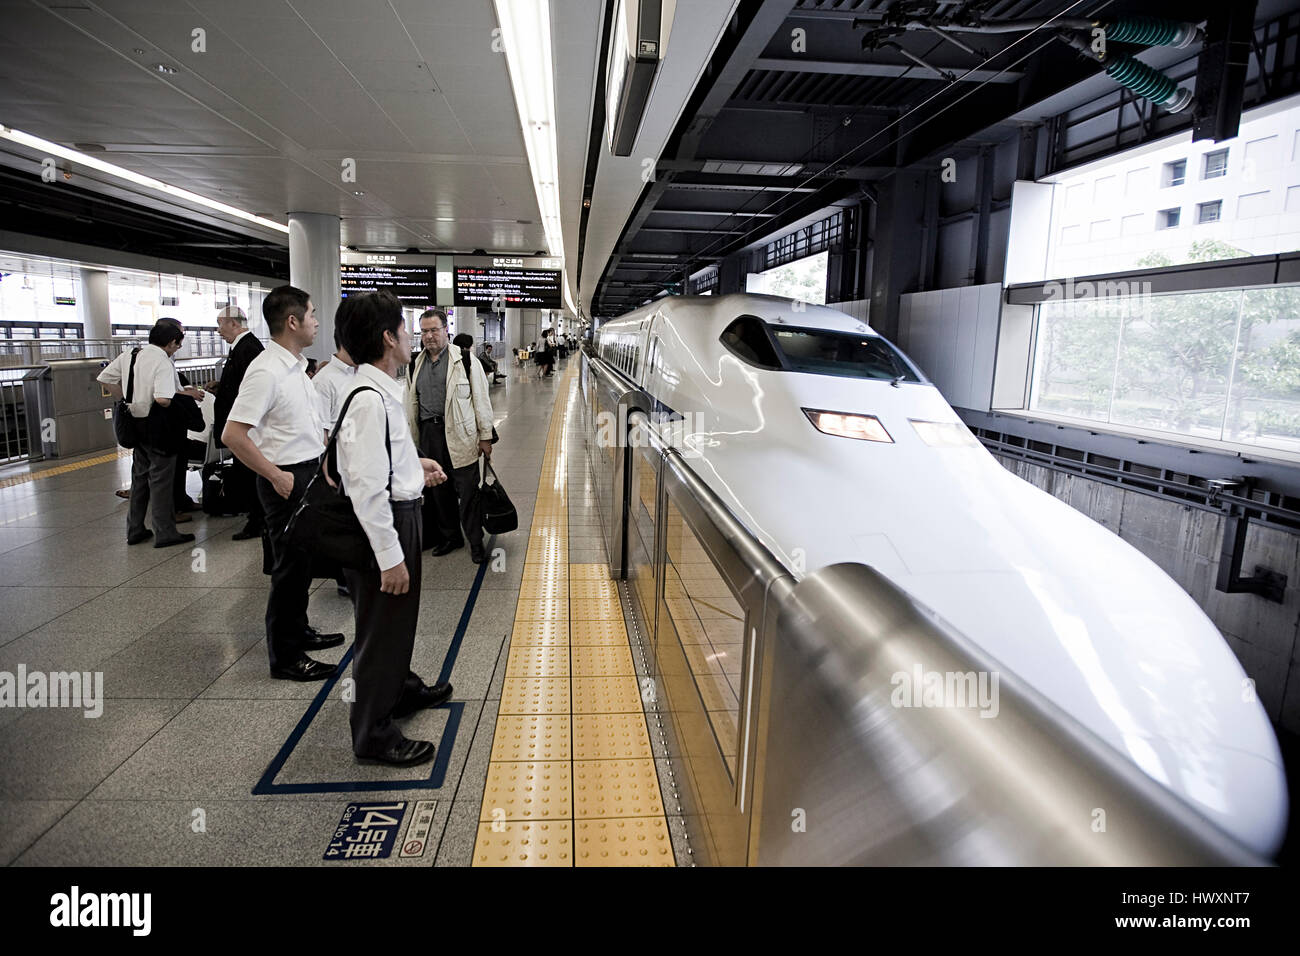 Les passagers attendent le train Shinkansen pour arriver. Le Shinkansen est un train à grande vitesse avec une vitesse maximale de 320 km/h au Japon. Banque D'Images